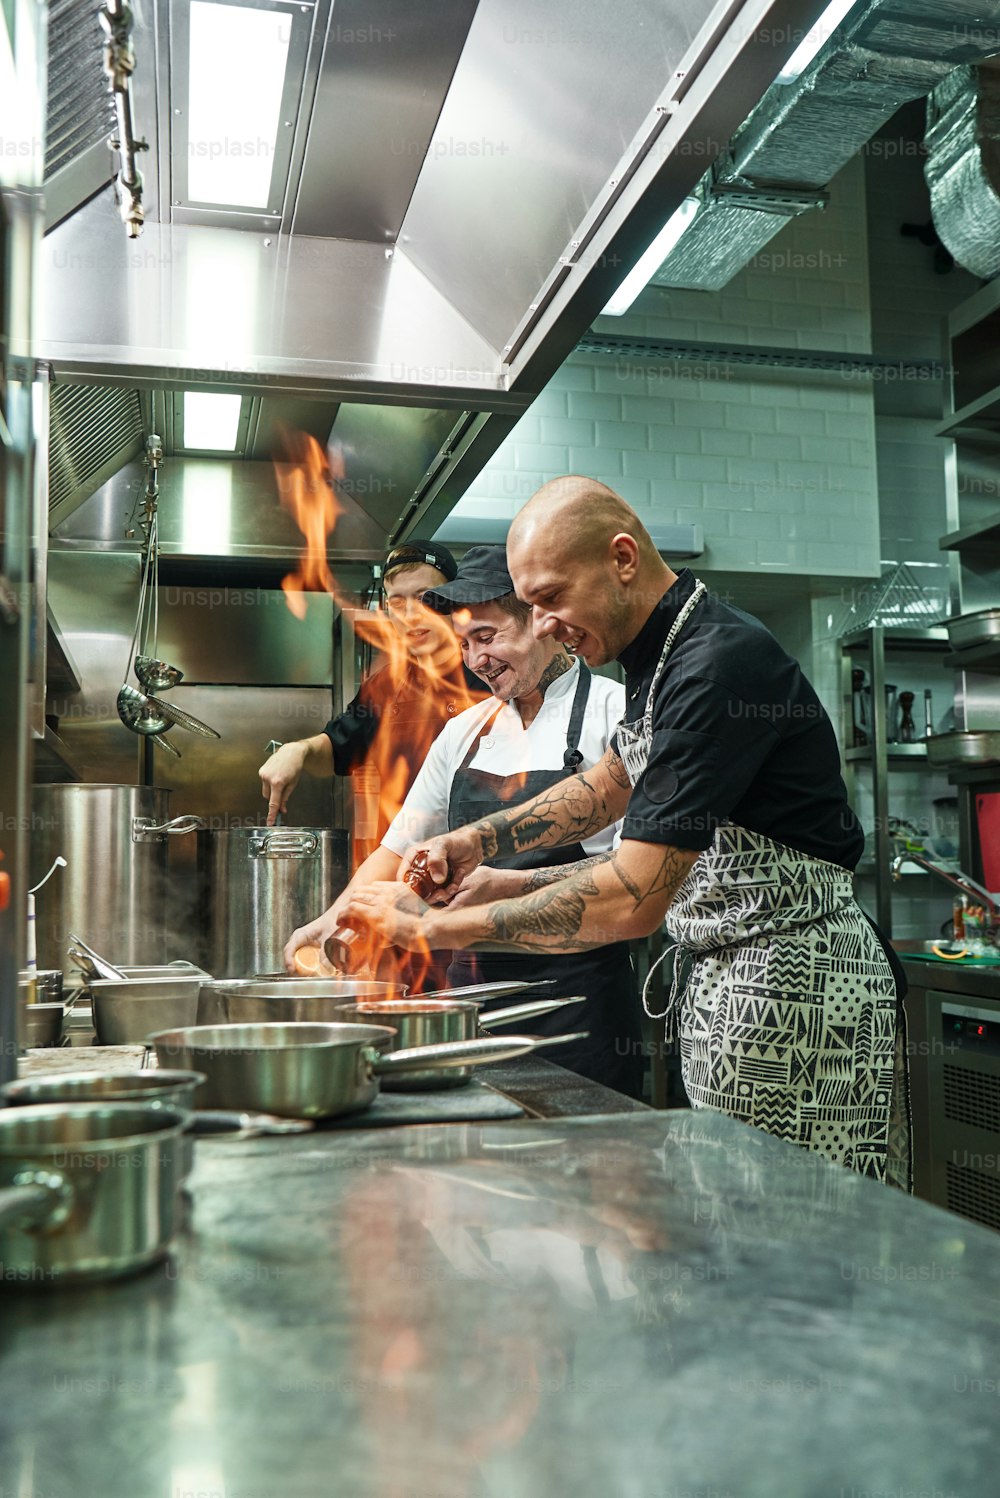 Très chaud Chef joyeux et deux de ses assistants préparant le plat sur la cuisinière avec un feu ouvert dans la cuisine du restaurant. Flamber. Concept de cuisson